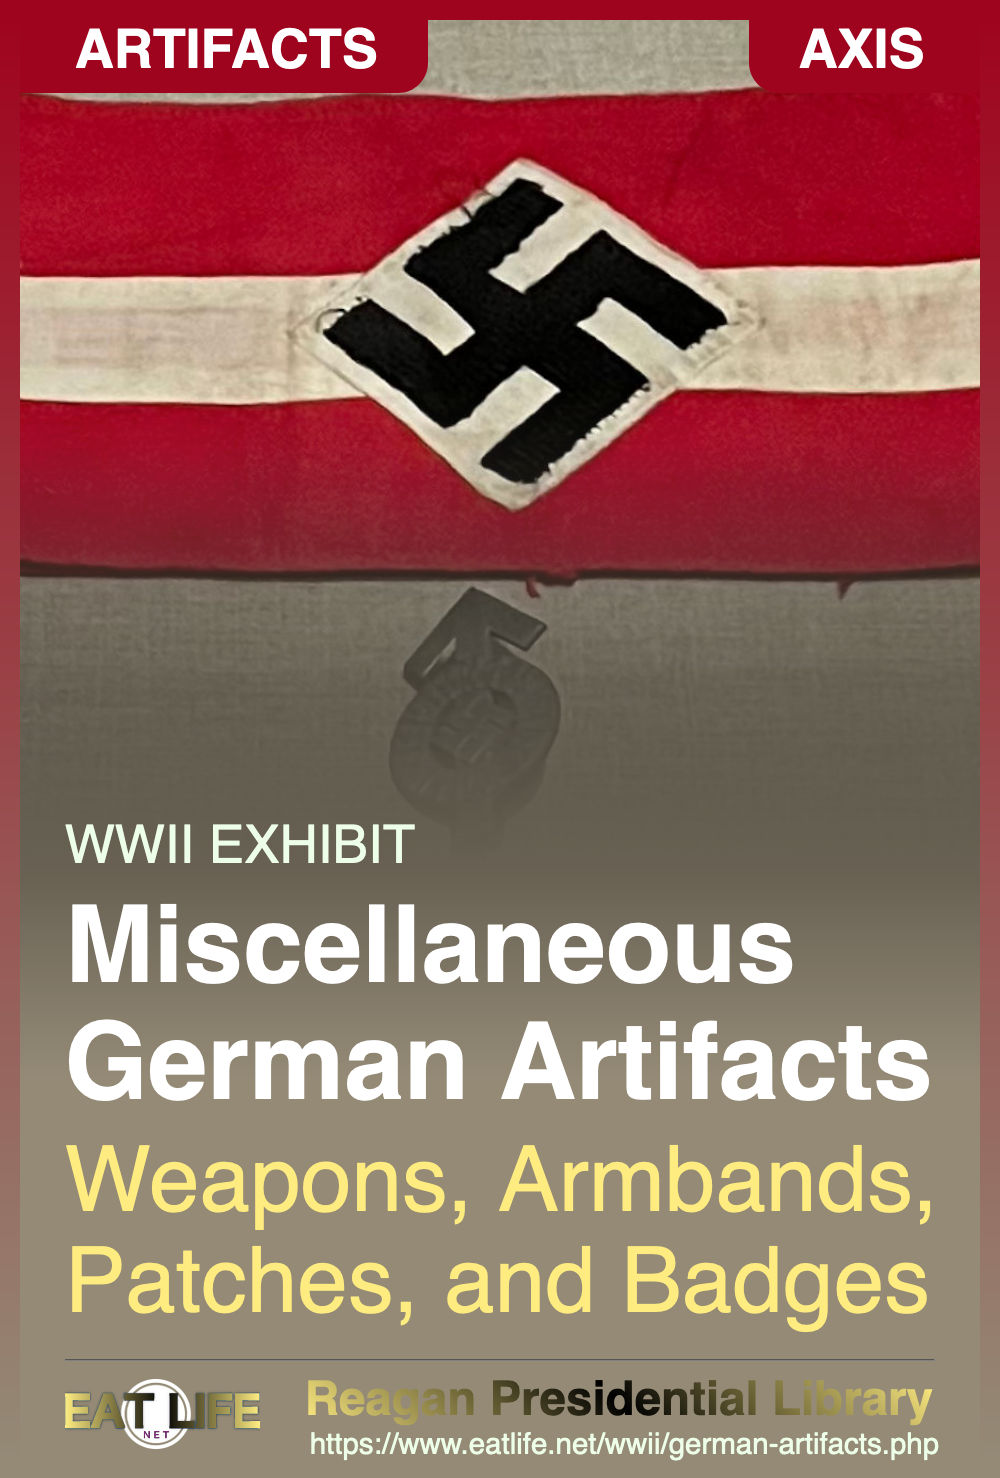 Some German Artifacts